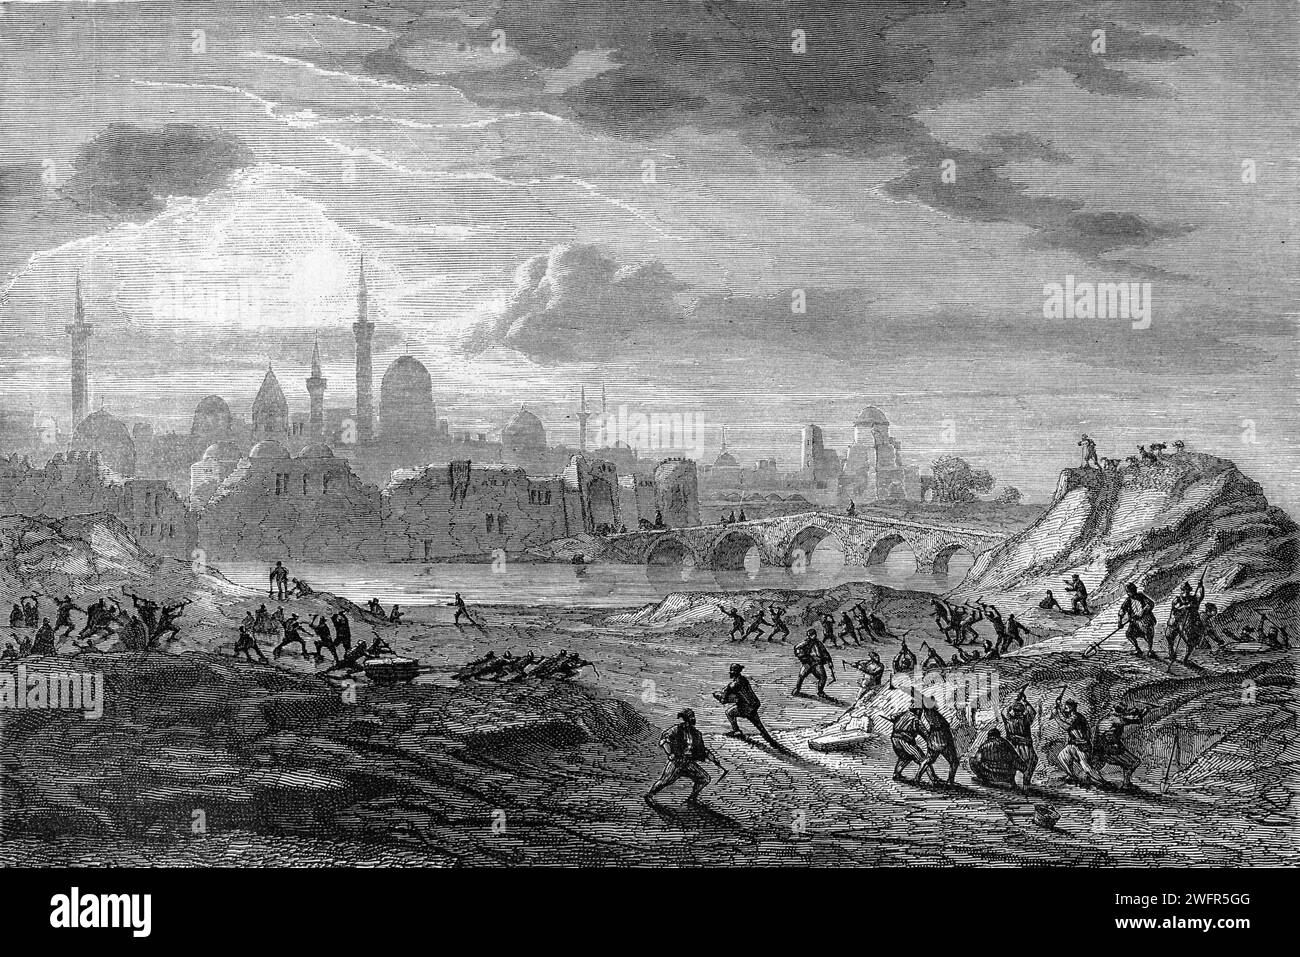 Vista anticipata della città di Mosul, Ninive, Iraq, e del Ponte ad arco o Ponte Vecchio sul fiume Tigri. Incisione vintage o storica o illustrazione 1863 Foto Stock